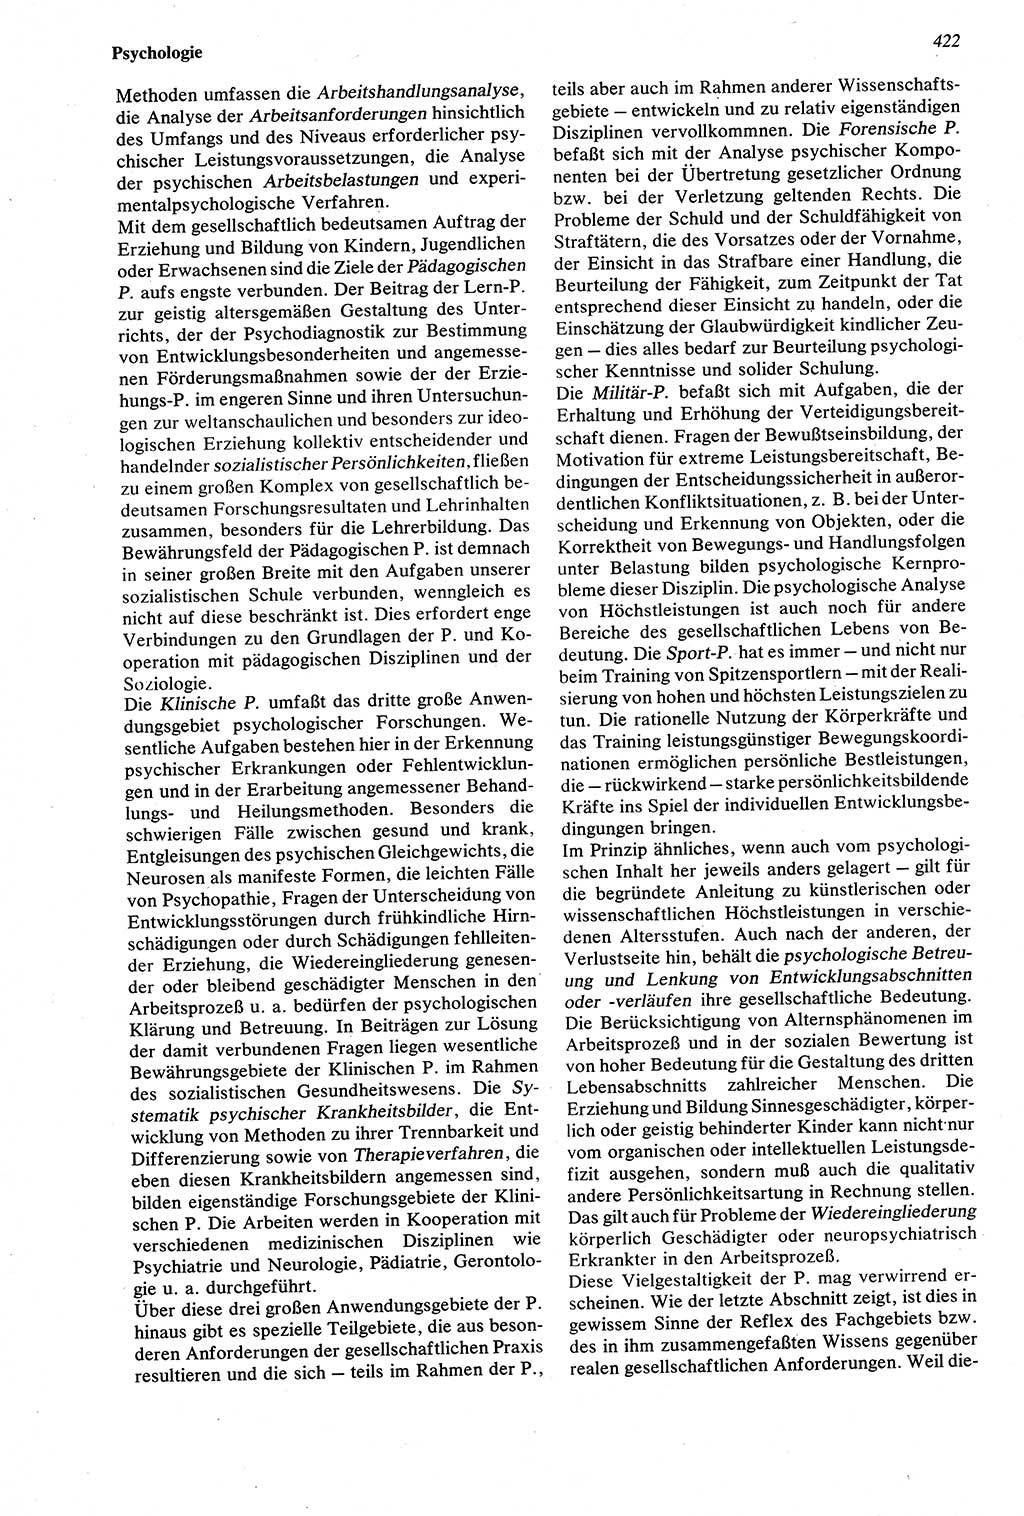 Wörterbuch der Psychologie [Deutsche Demokratische Republik (DDR)] 1976, Seite 422 (Wb. Psych. DDR 1976, S. 422)